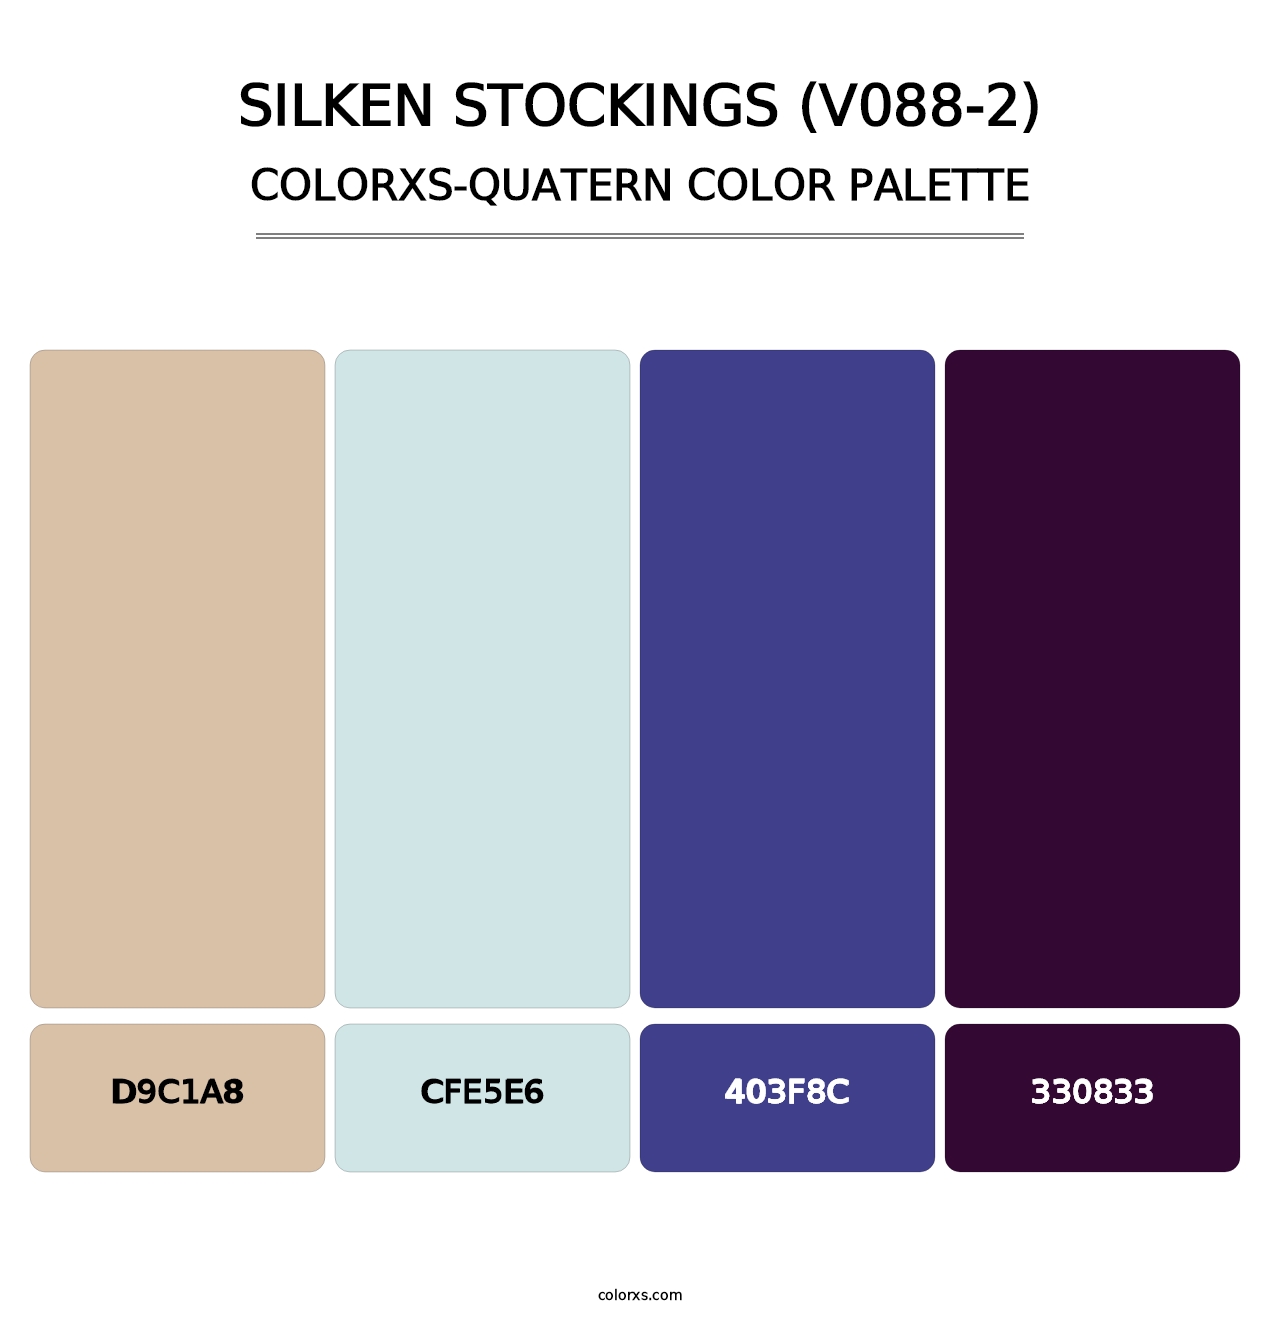 Silken Stockings (V088-2) - Colorxs Quatern Palette